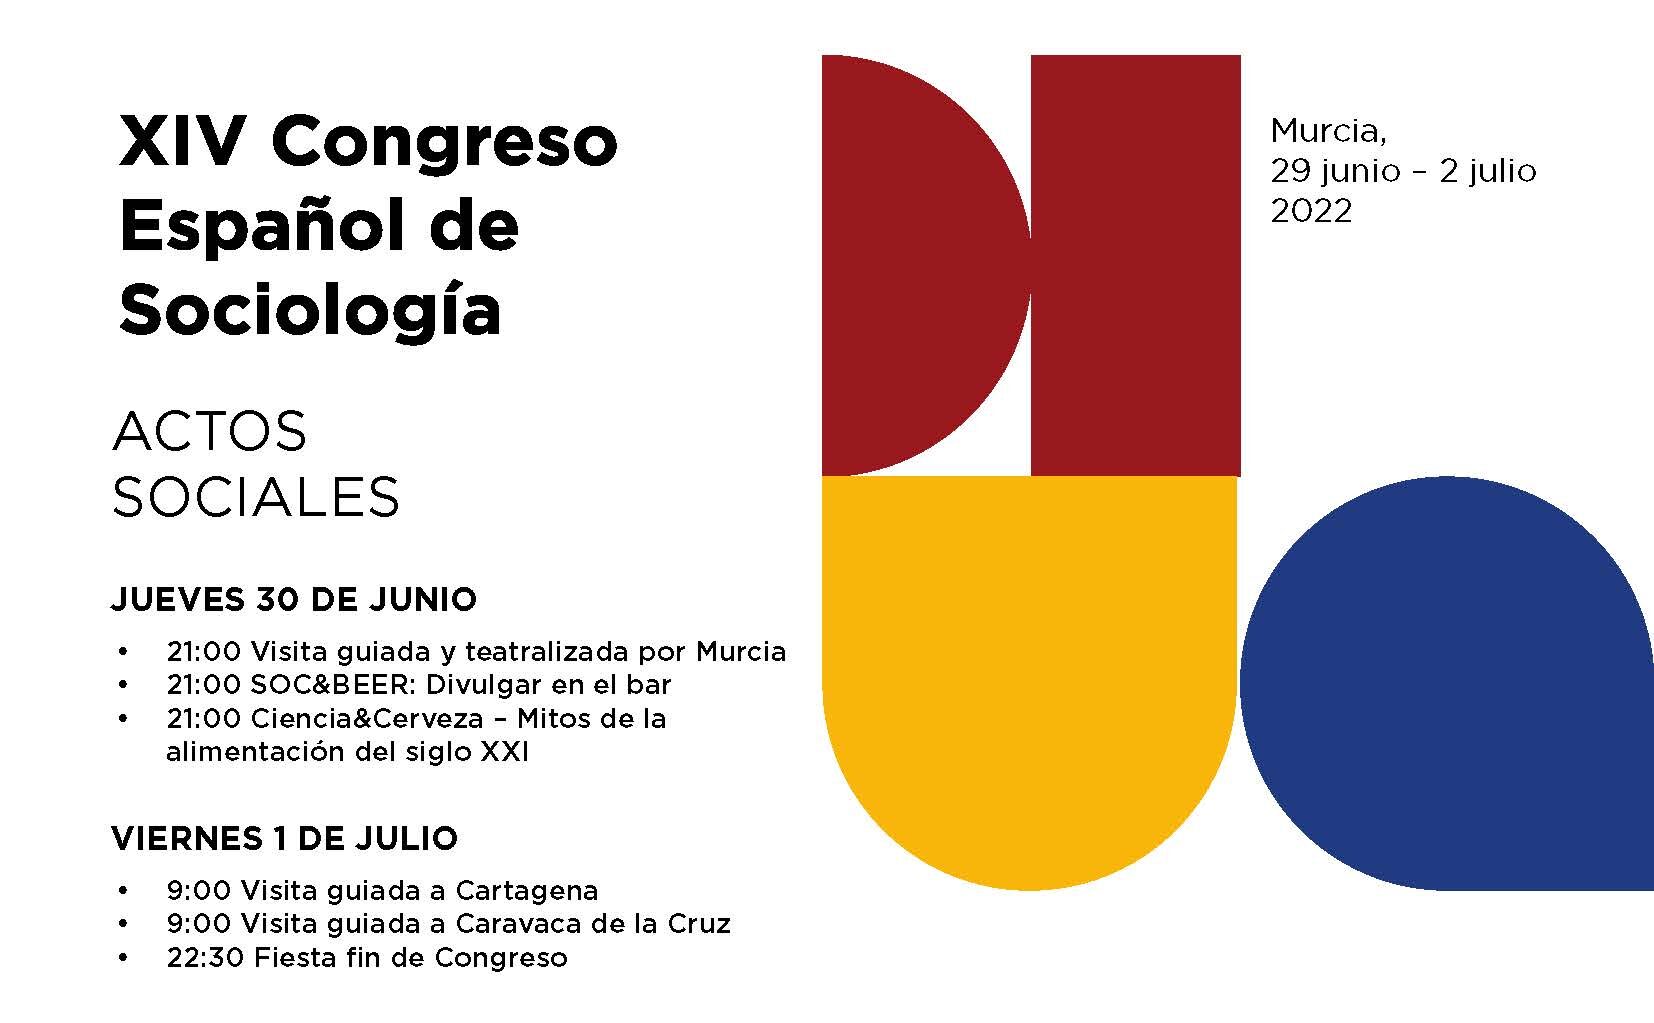 Concierto de SOC&BEER durante el XI Congreso Español de Sociología de la Federación Española de Sociología, el 30 de junio, a las 21 horas, en el Bar ÍTACA de Murcia.